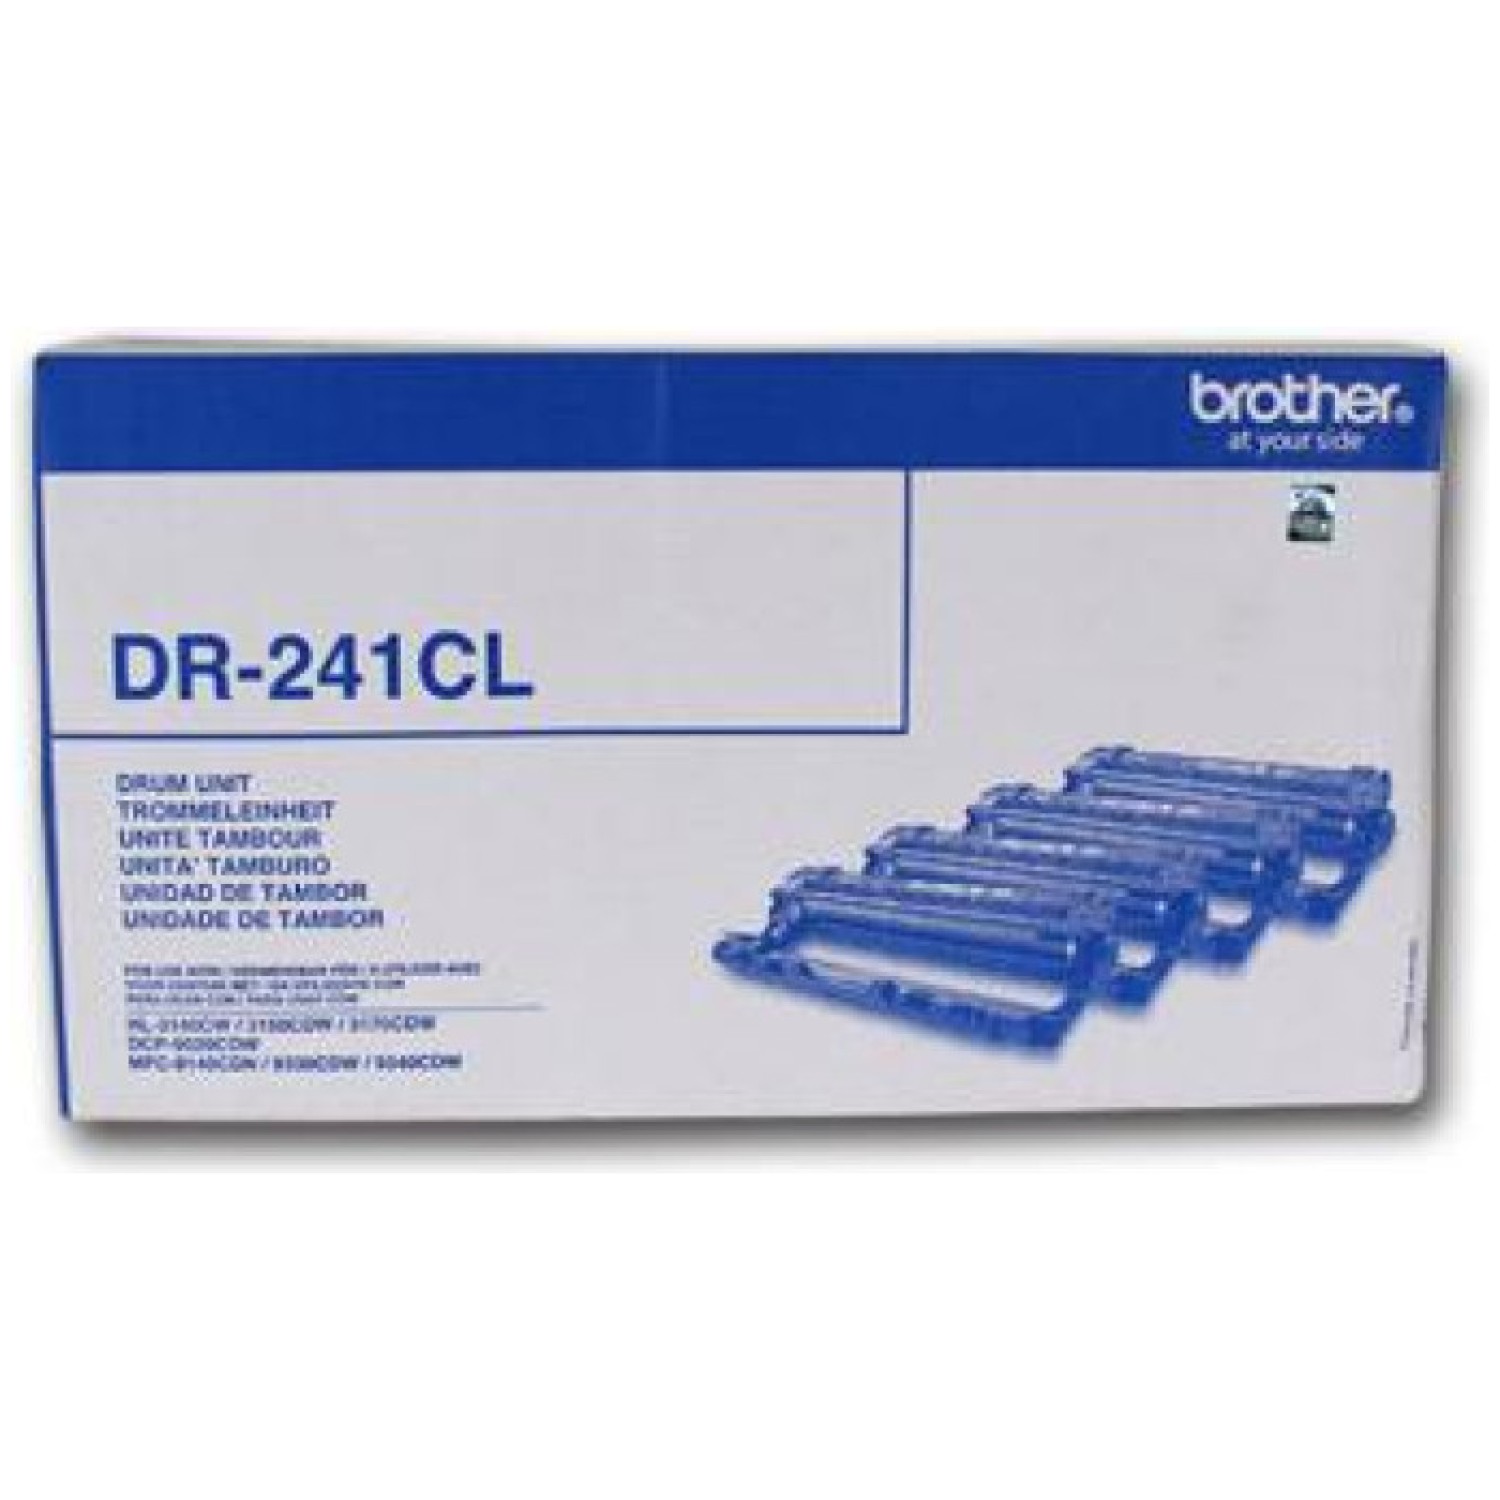 Brother DR-241CL boben